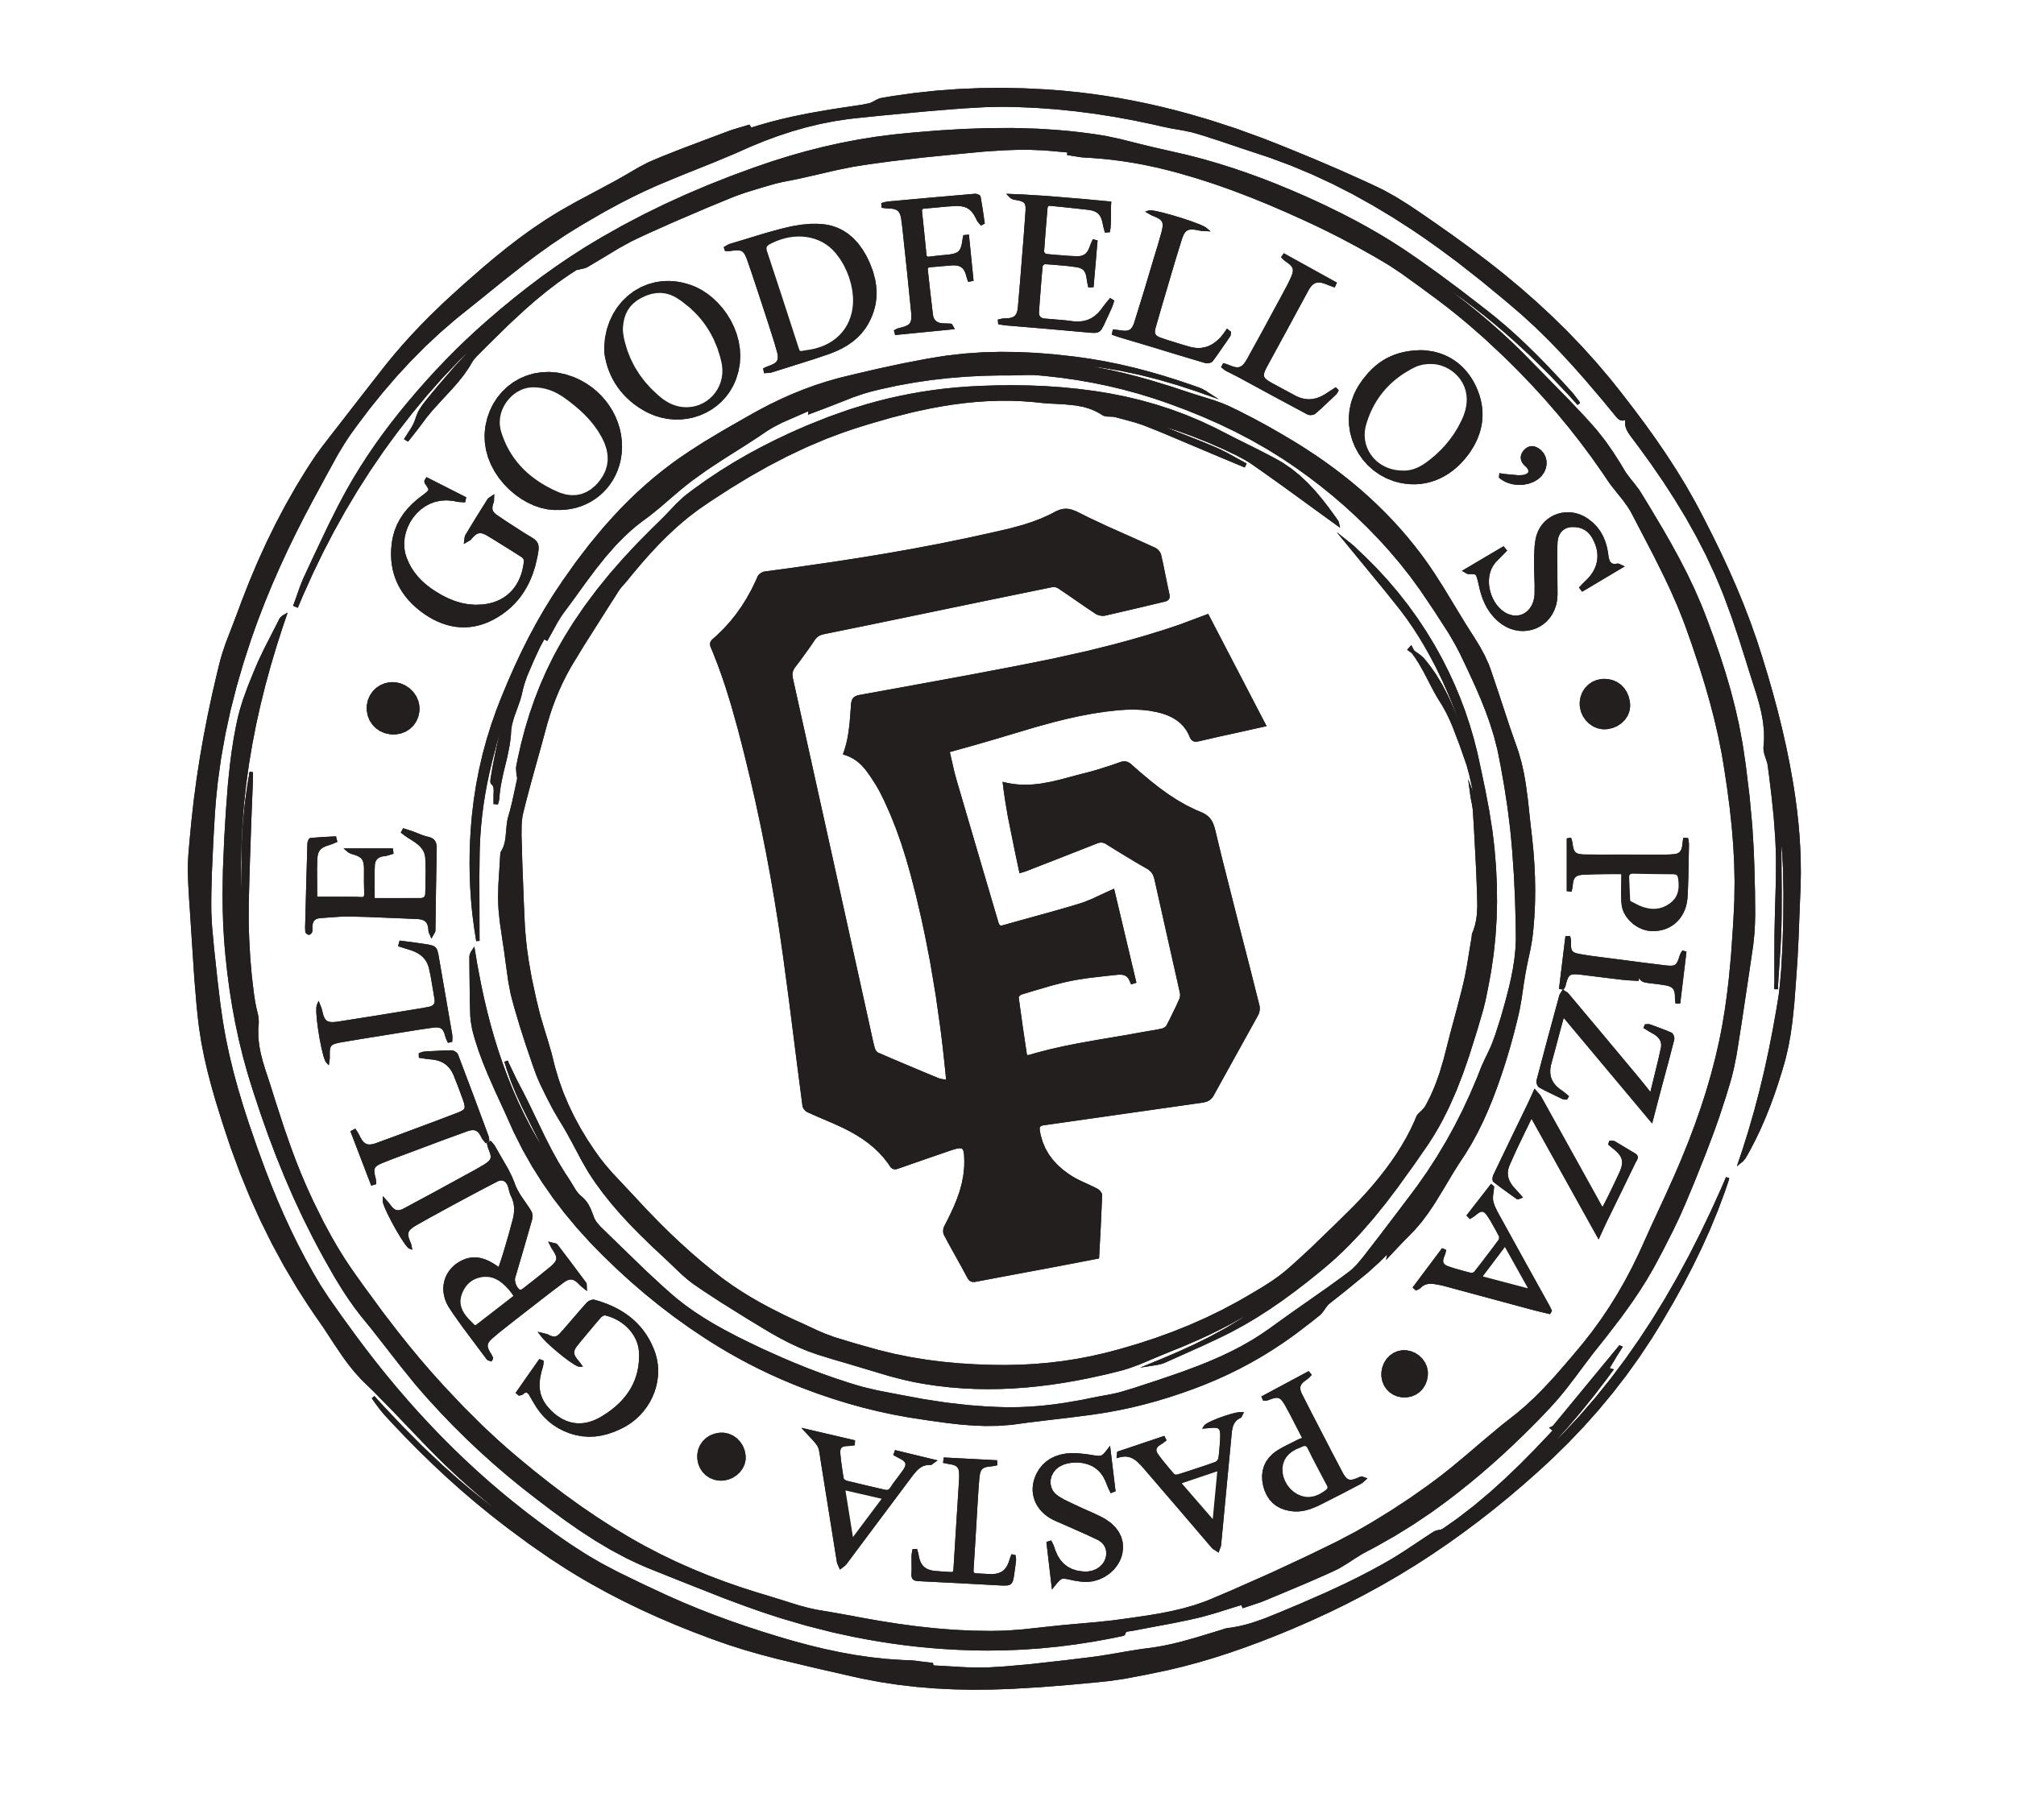 Goodfellos